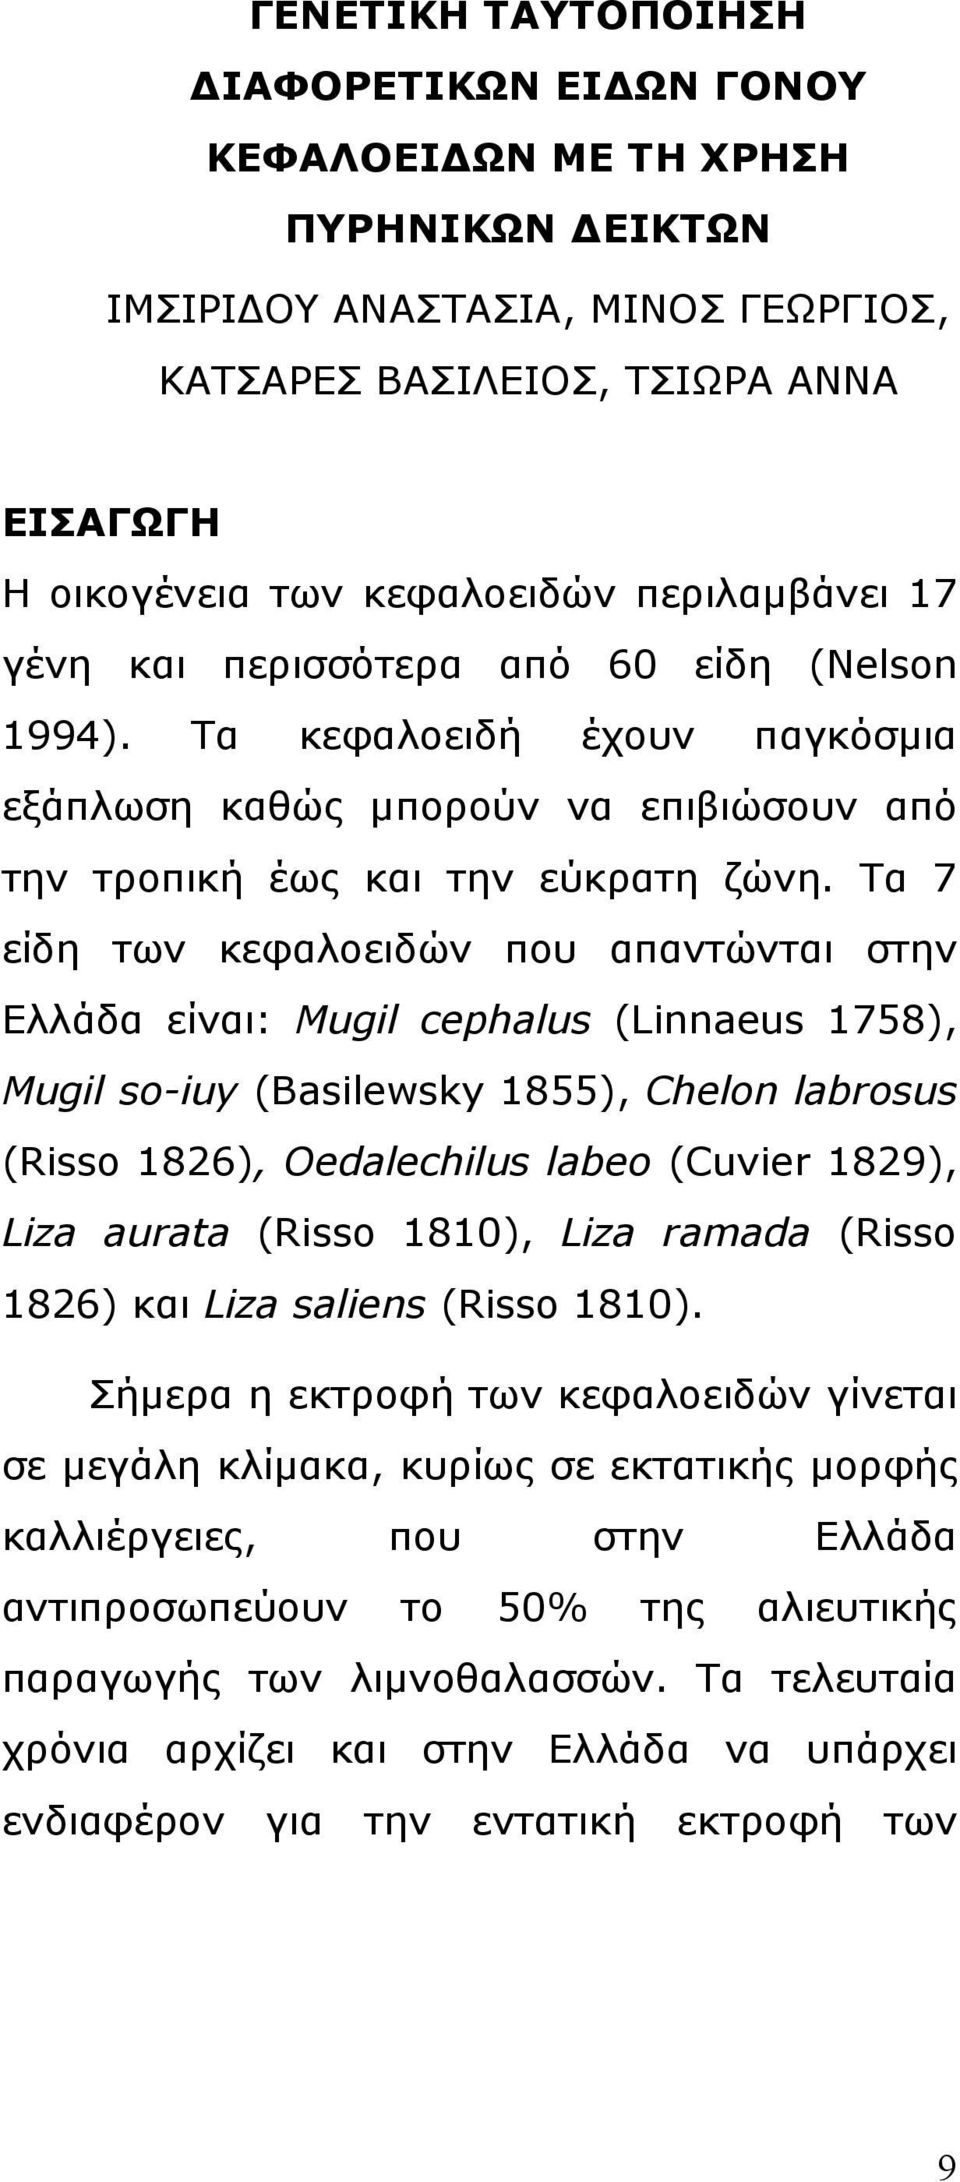 Τα 7 είδη των κεφαλοειδών που απαντώνται στην Ελλάδα είναι: Mugil cephalus (Linnaeus 1758), Mugil so-iuy (Basilewsky 1855), Chelon labrosus (Risso 1826), Oedalechilus labeo (Cuvier 1829), Liza aurata